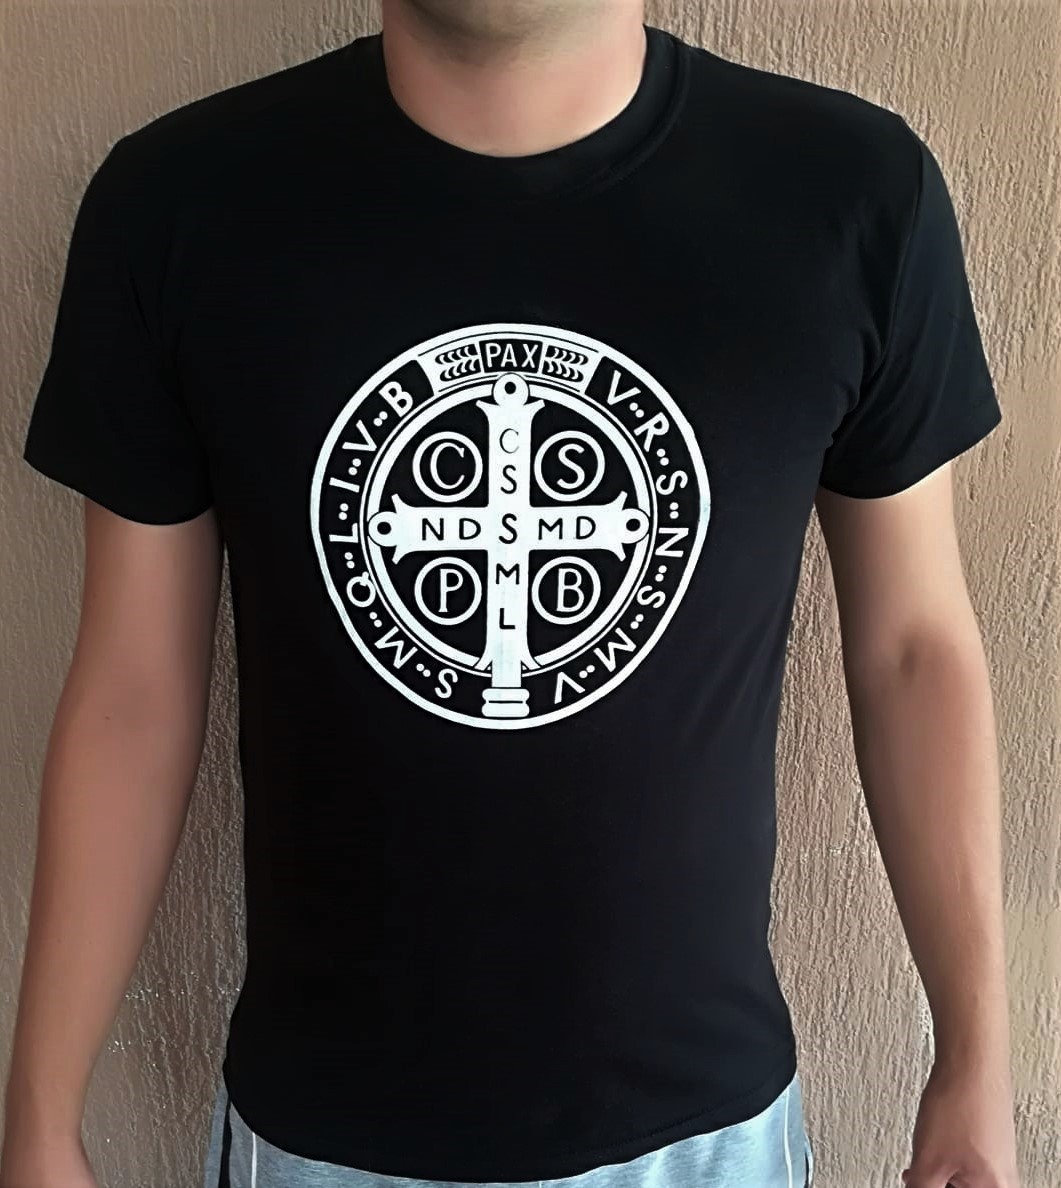 Christian T Shirt St Benedict Catholic Shirt Black / White | Etsy